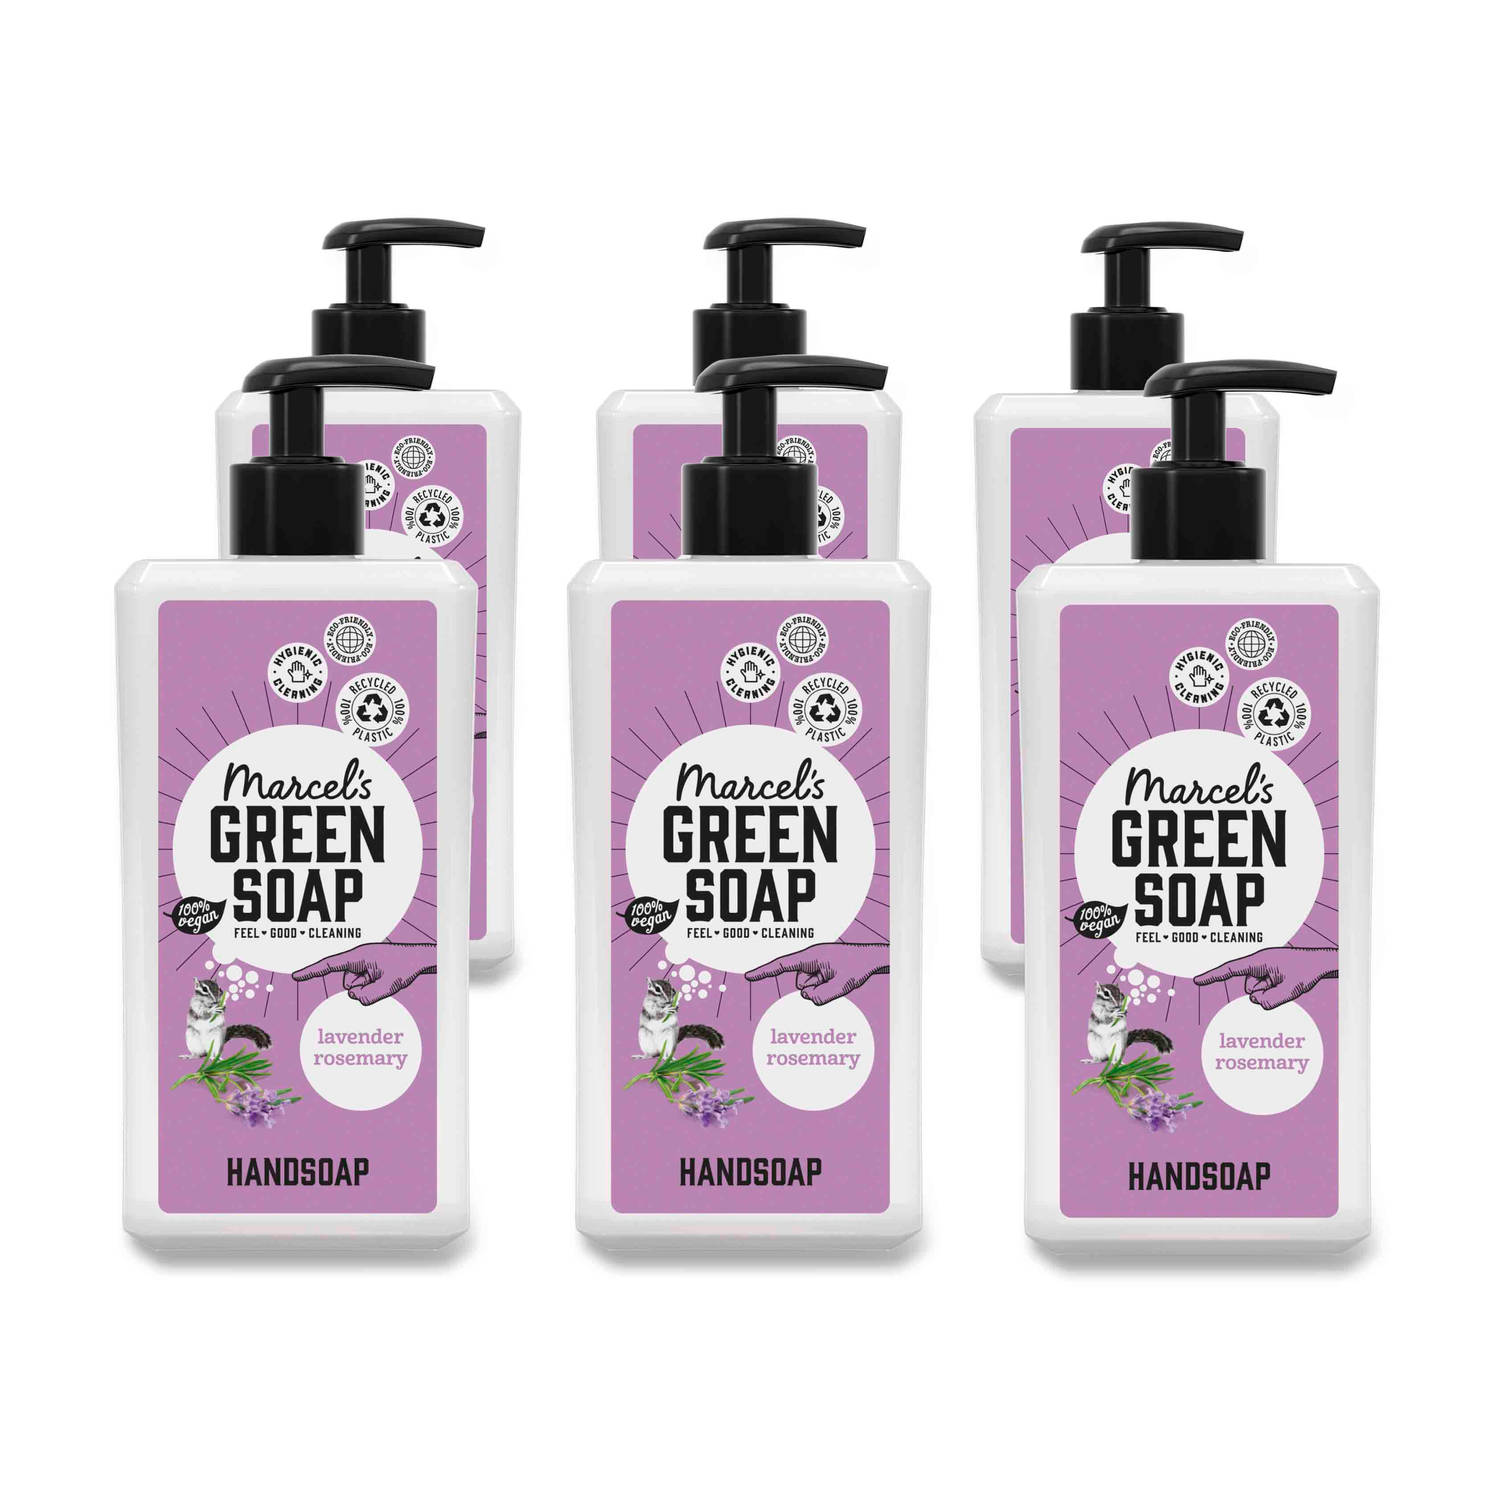 Marcel's Green Soap Handzeep Lavendel & Rozemarijn - 500ml - 6 stuks